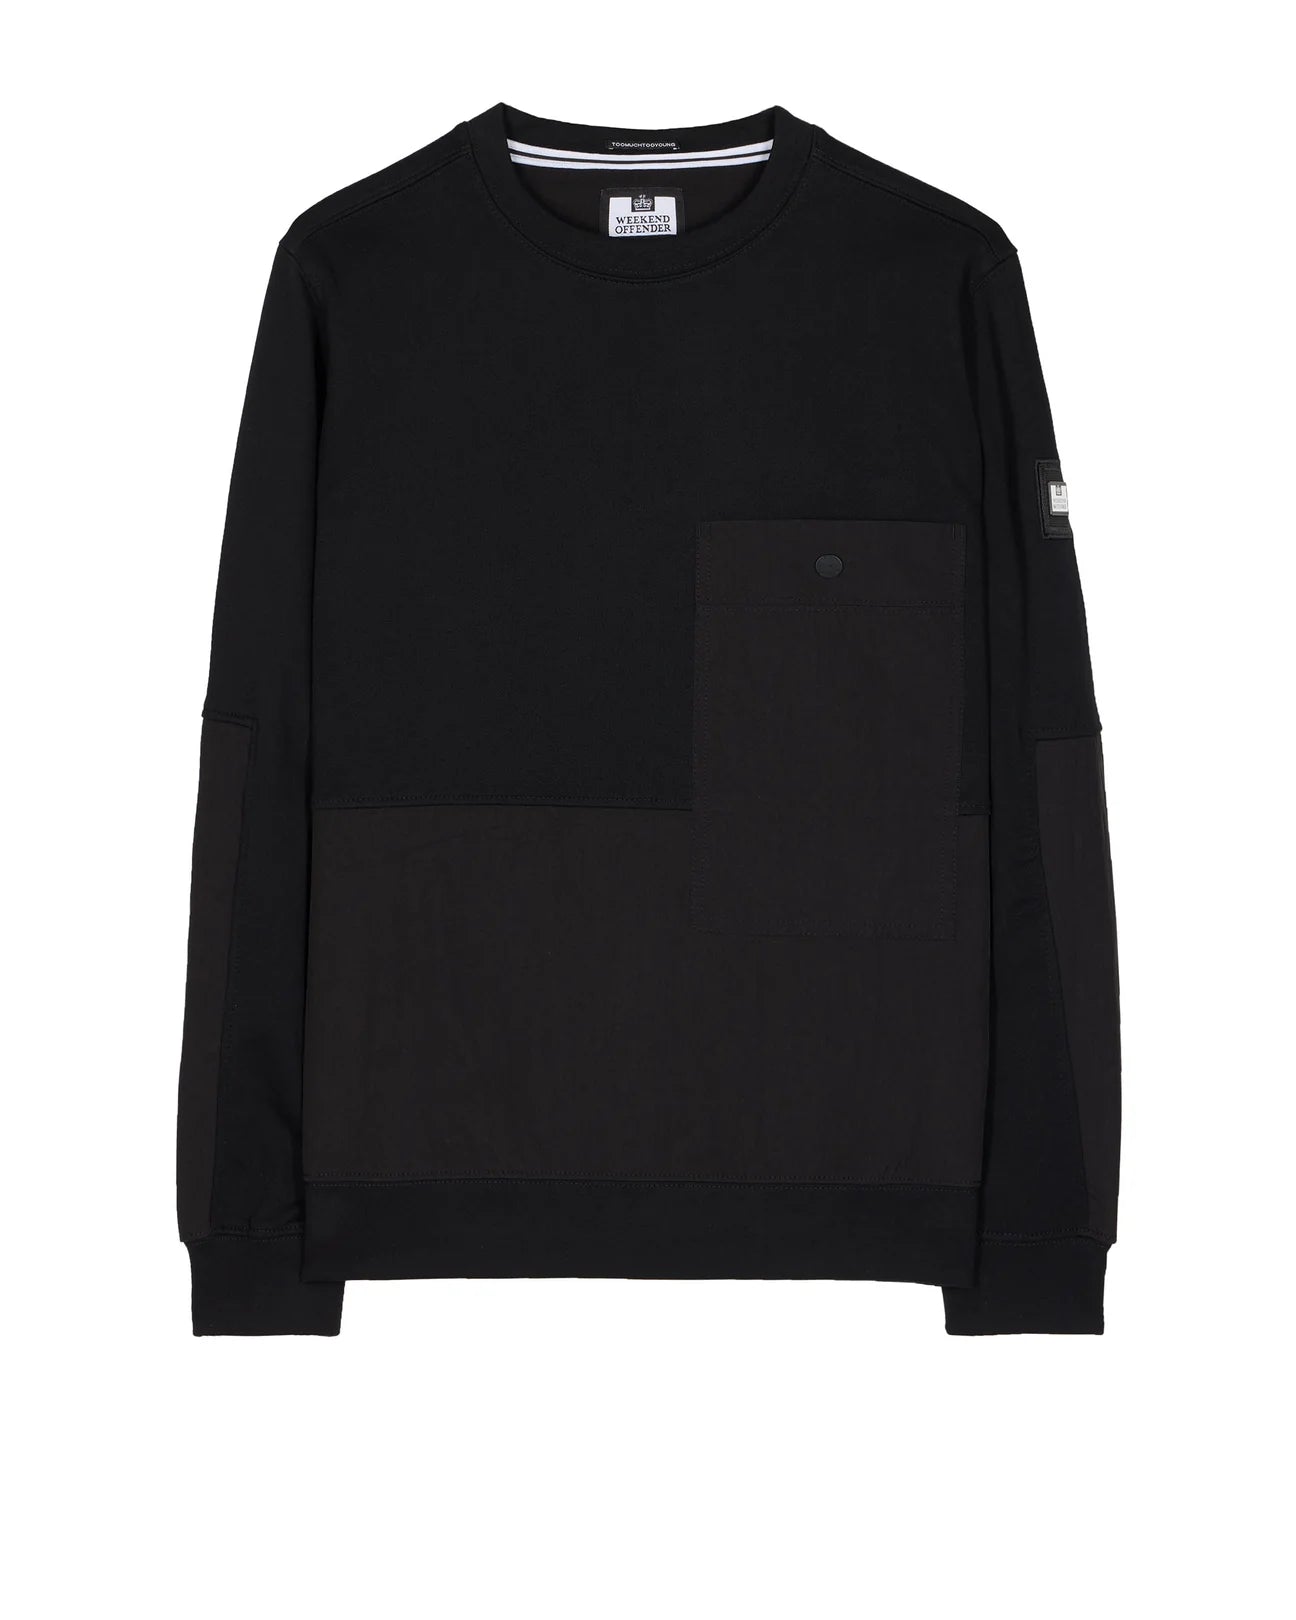 Weekend Offender - Sirenko Pocket Sweatshirt Black